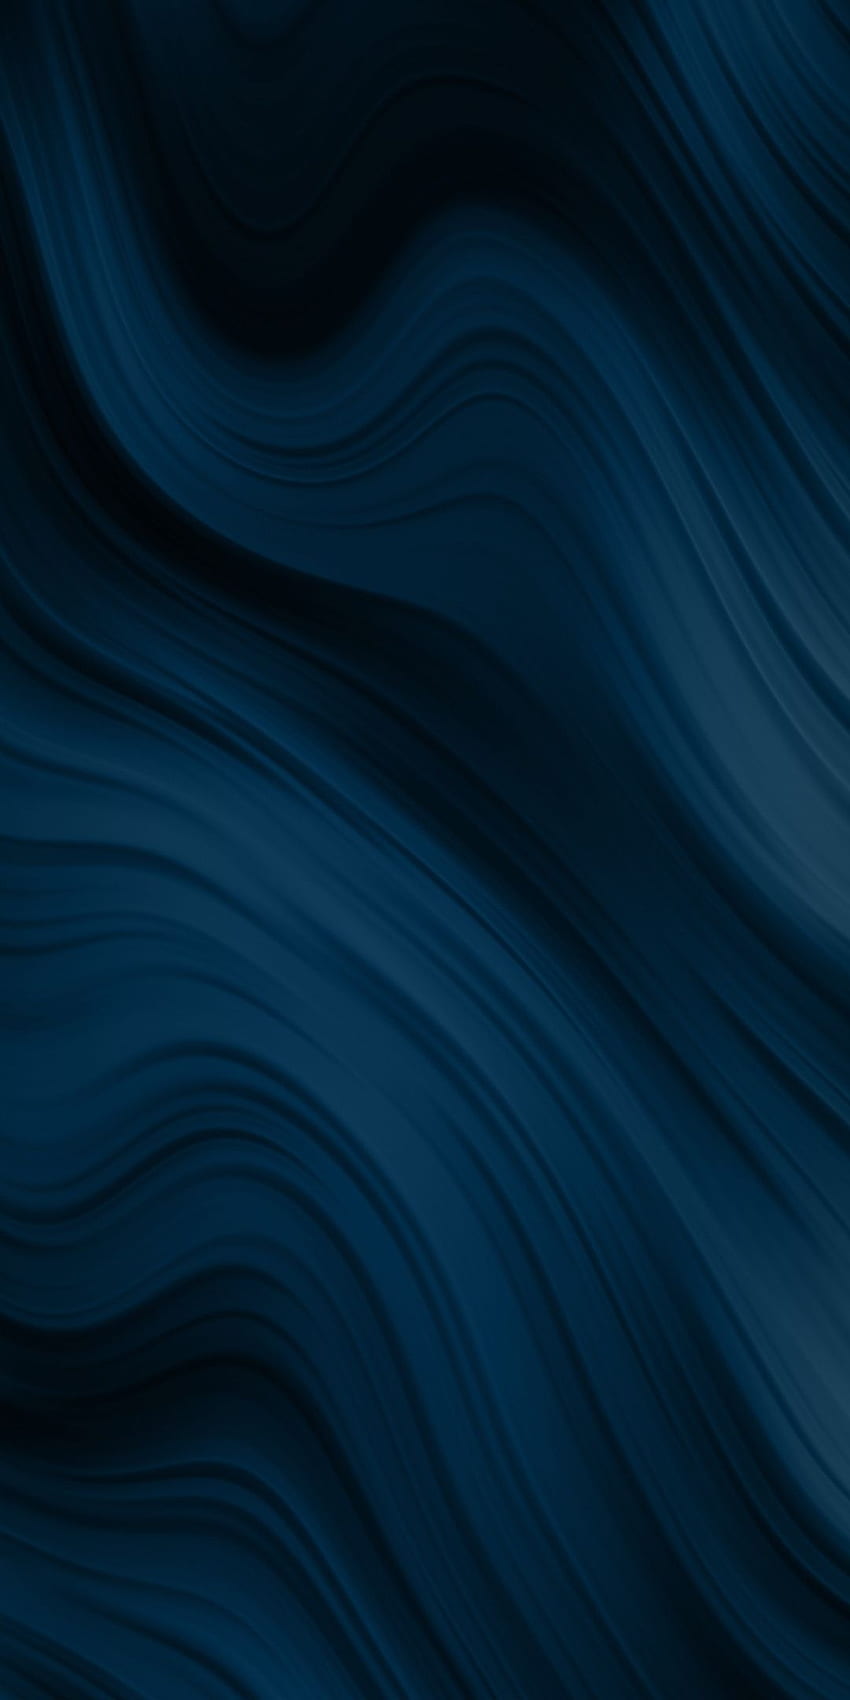 Gelap, garis melengkung, gelombang, abstrak, . iPhone abstrak, iPhone Ombre, tekstur iPhone, Ombre Biru Tua wallpaper ponsel HD